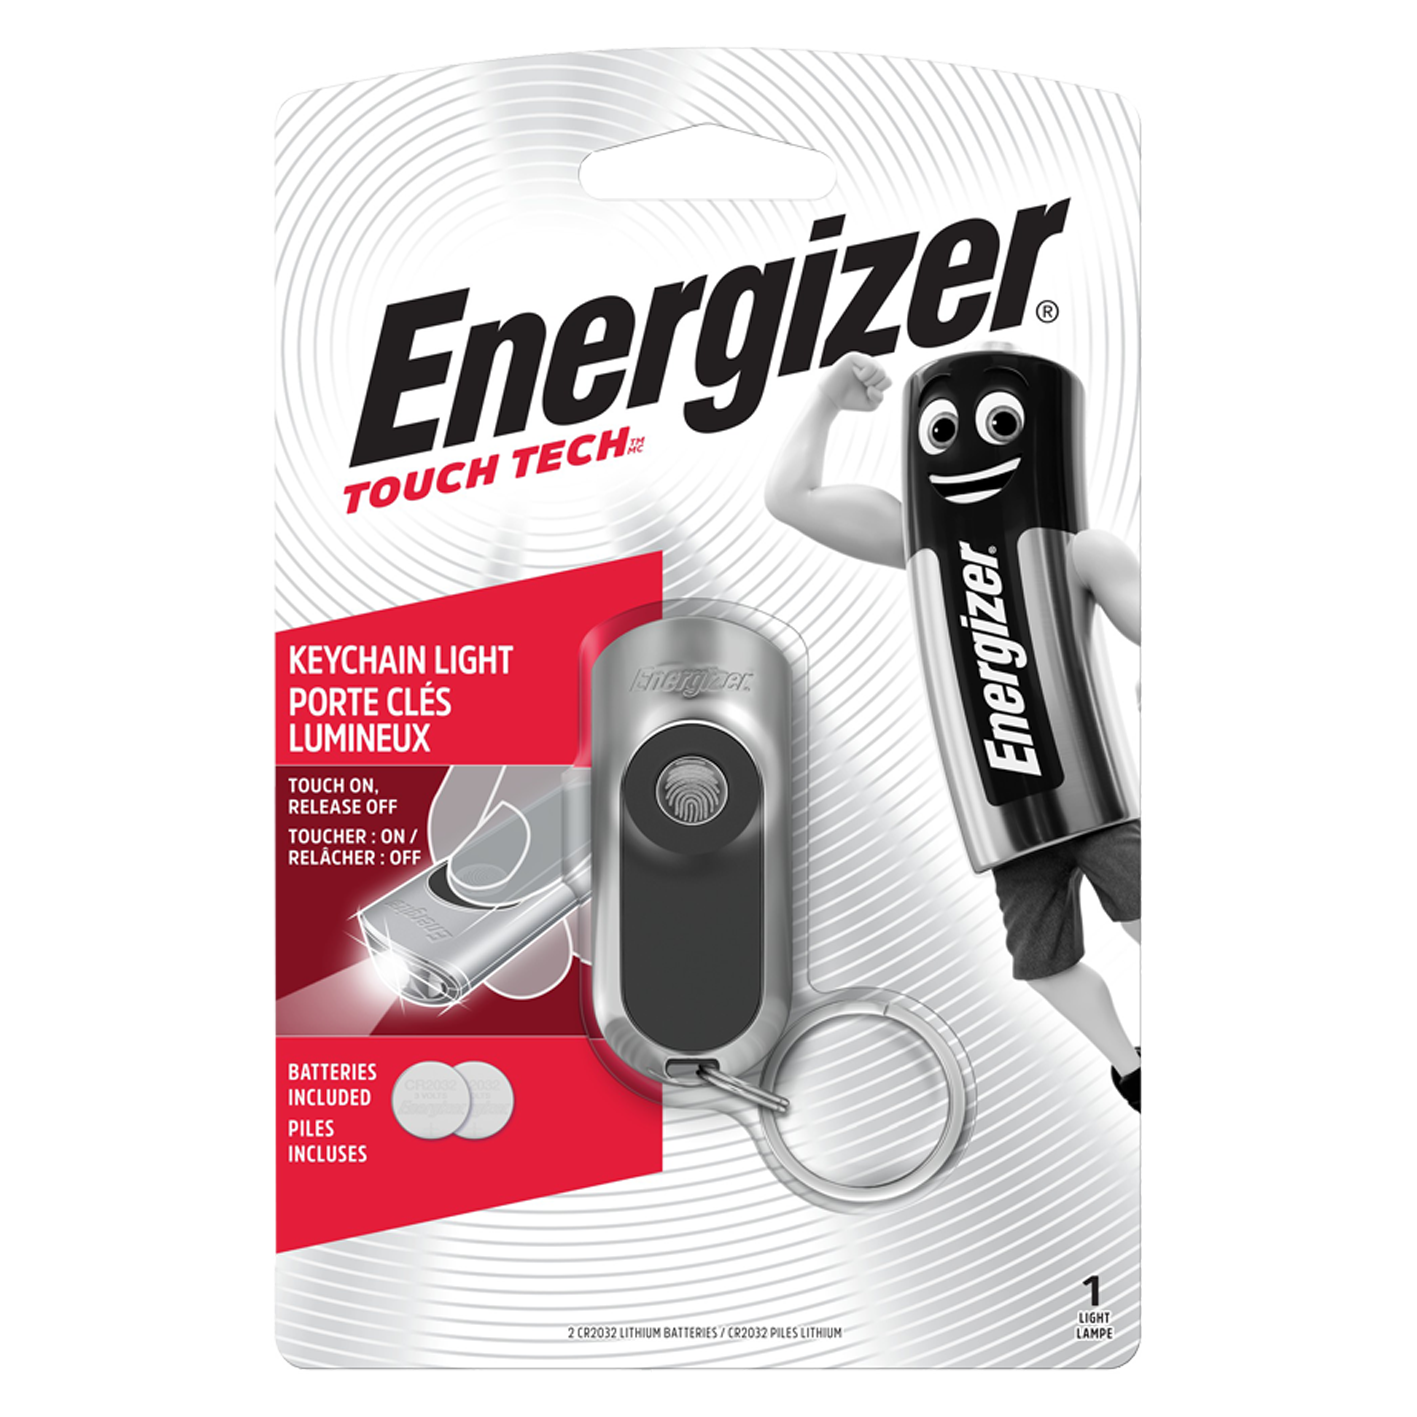 Energizer LED Schlüsselanhänger Touch Tech Taschenlampe mit 2 x CR2032 Batterien